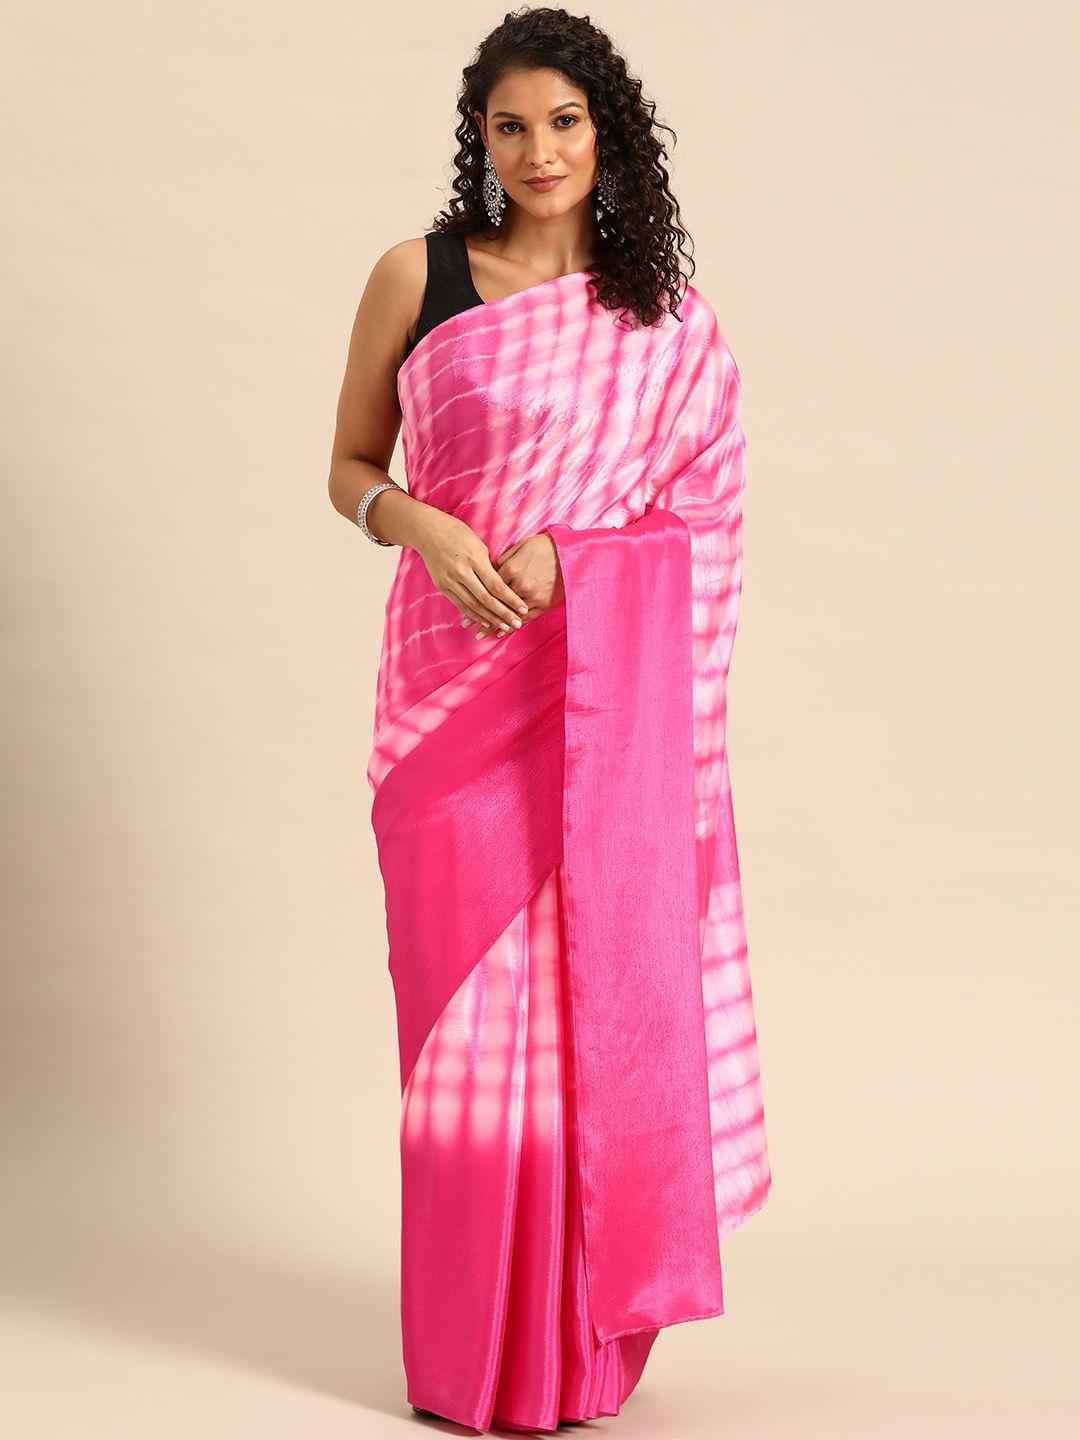 here&now tie & dye poly chiffon ready to wear saree